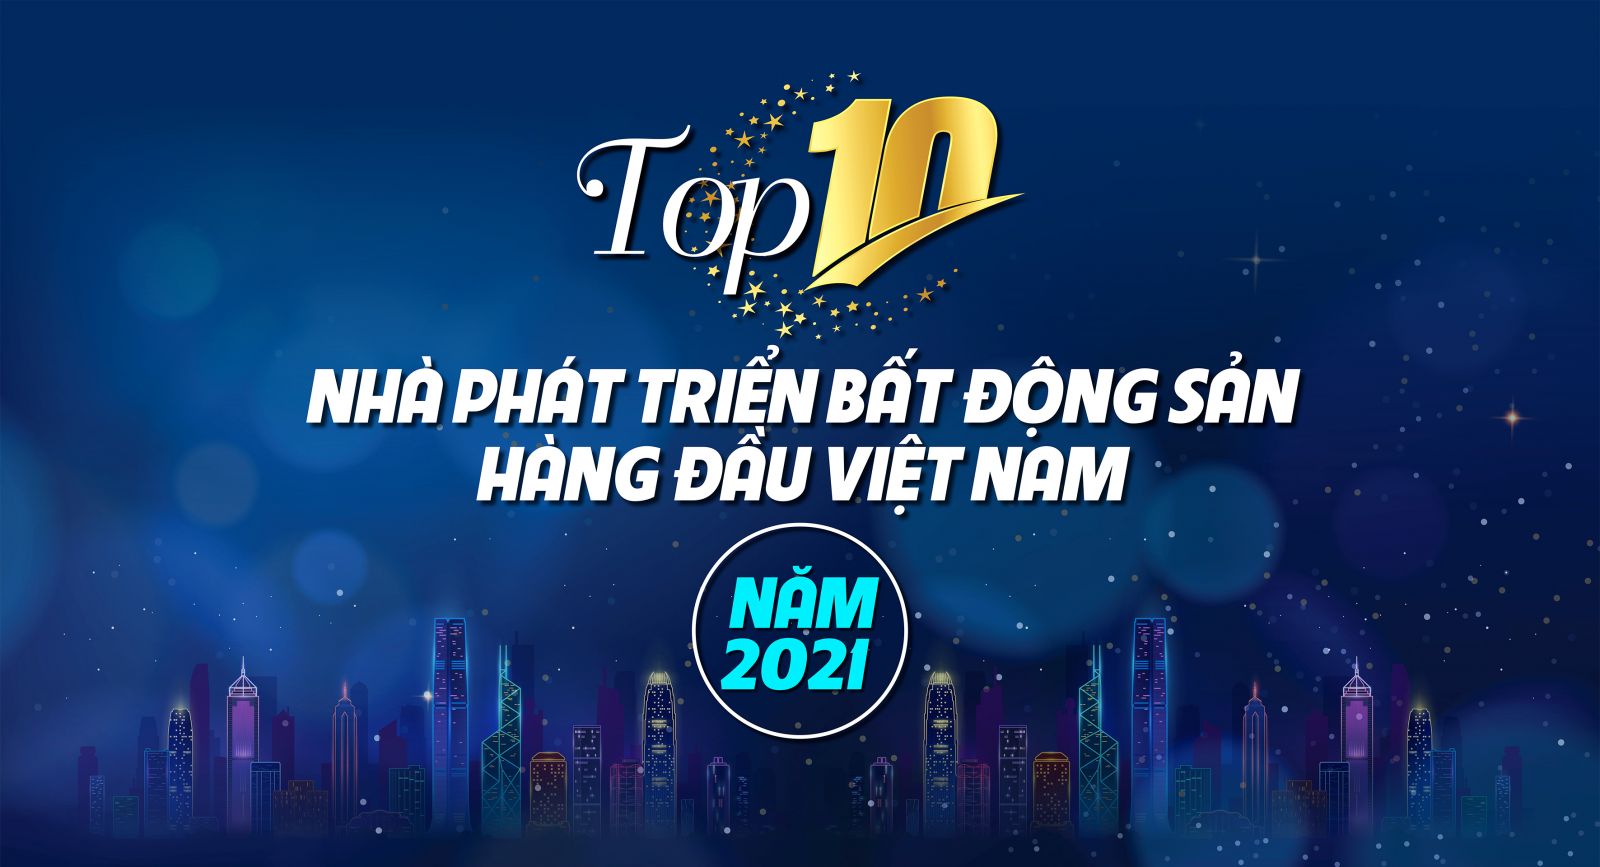 Top 10 nhà phát triển bất động sản hàng đầu Việt Nam năm 2021